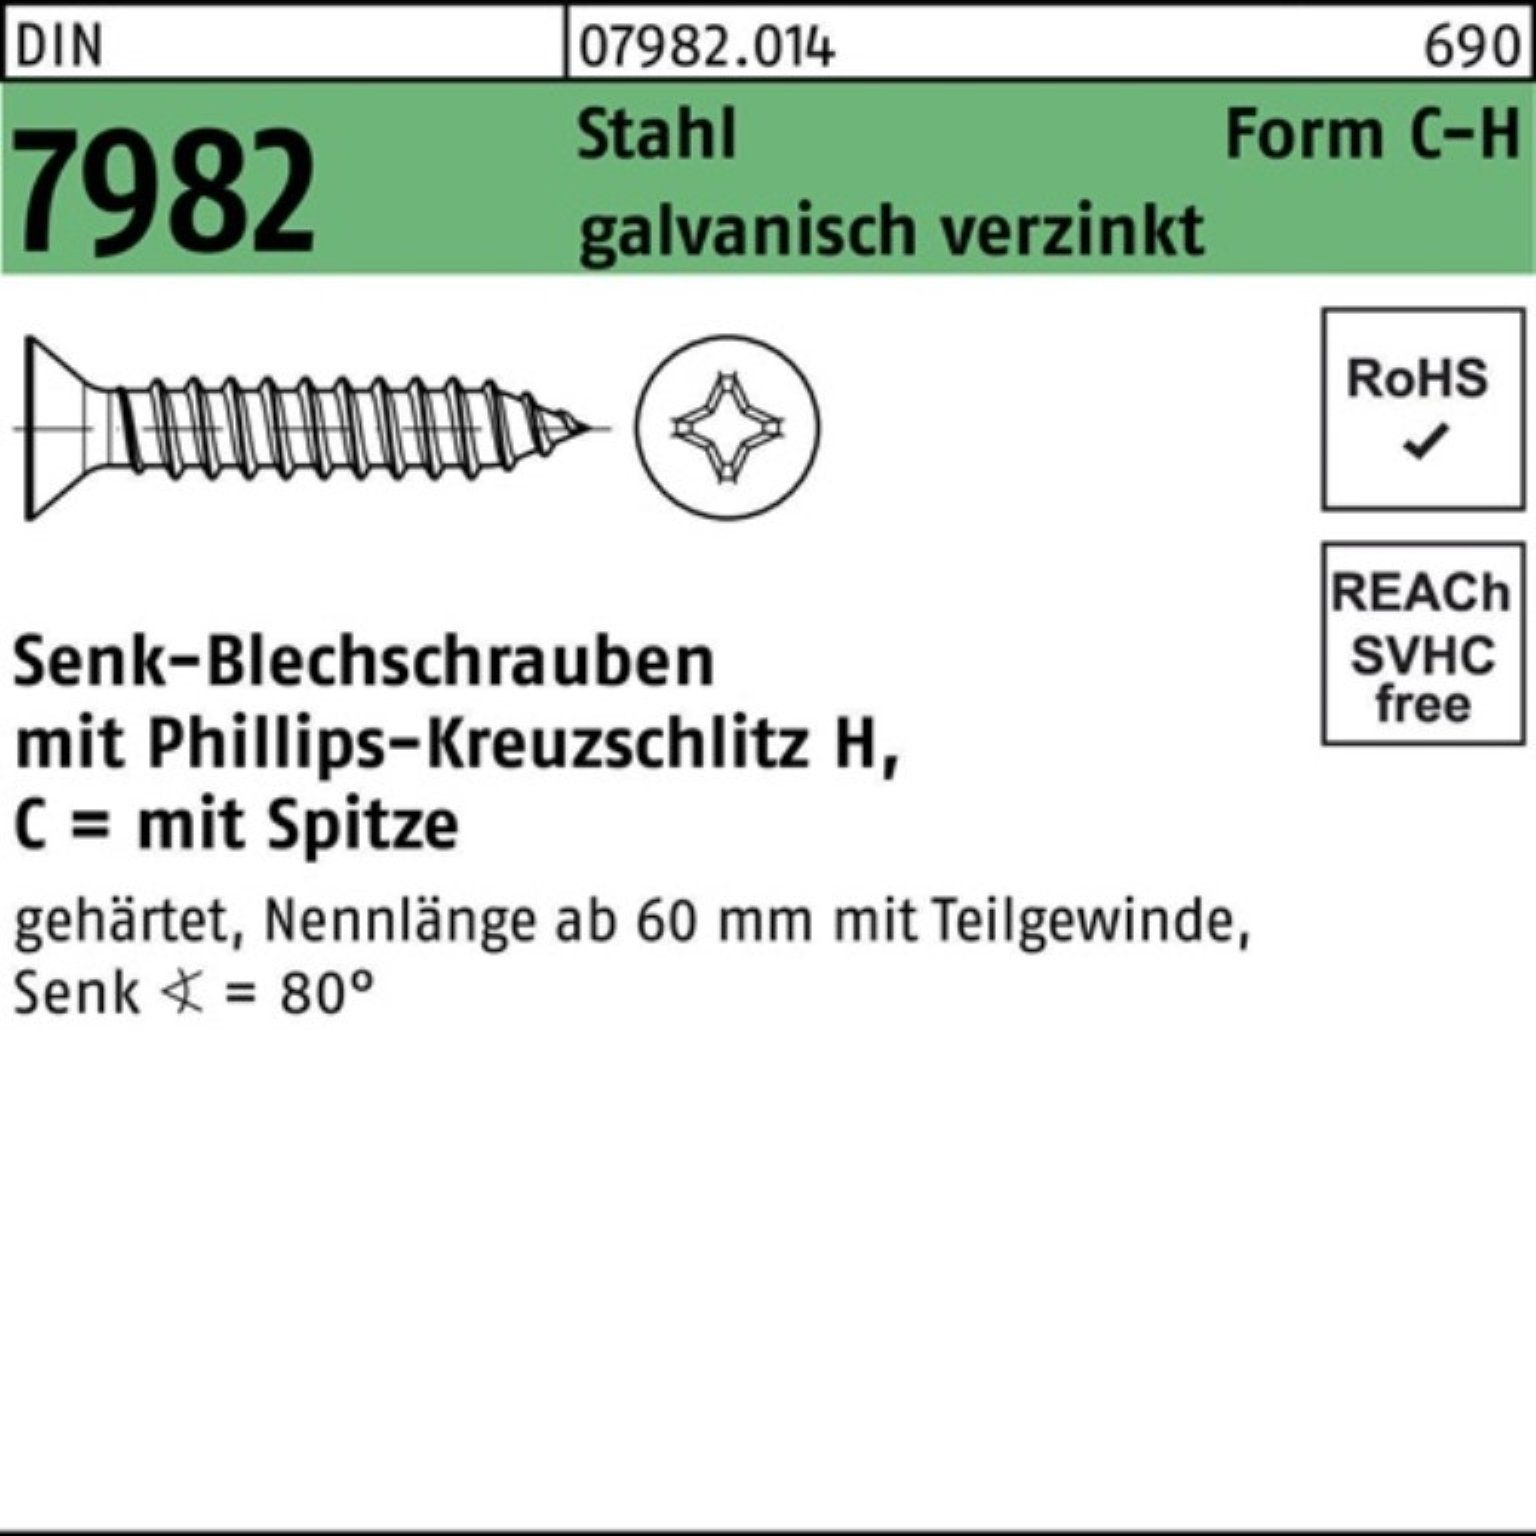 Reyher Schraube 100er Pack Stahl 4,2x22-H 7982 Senkblechschraube C PH/Spitze DIN galv